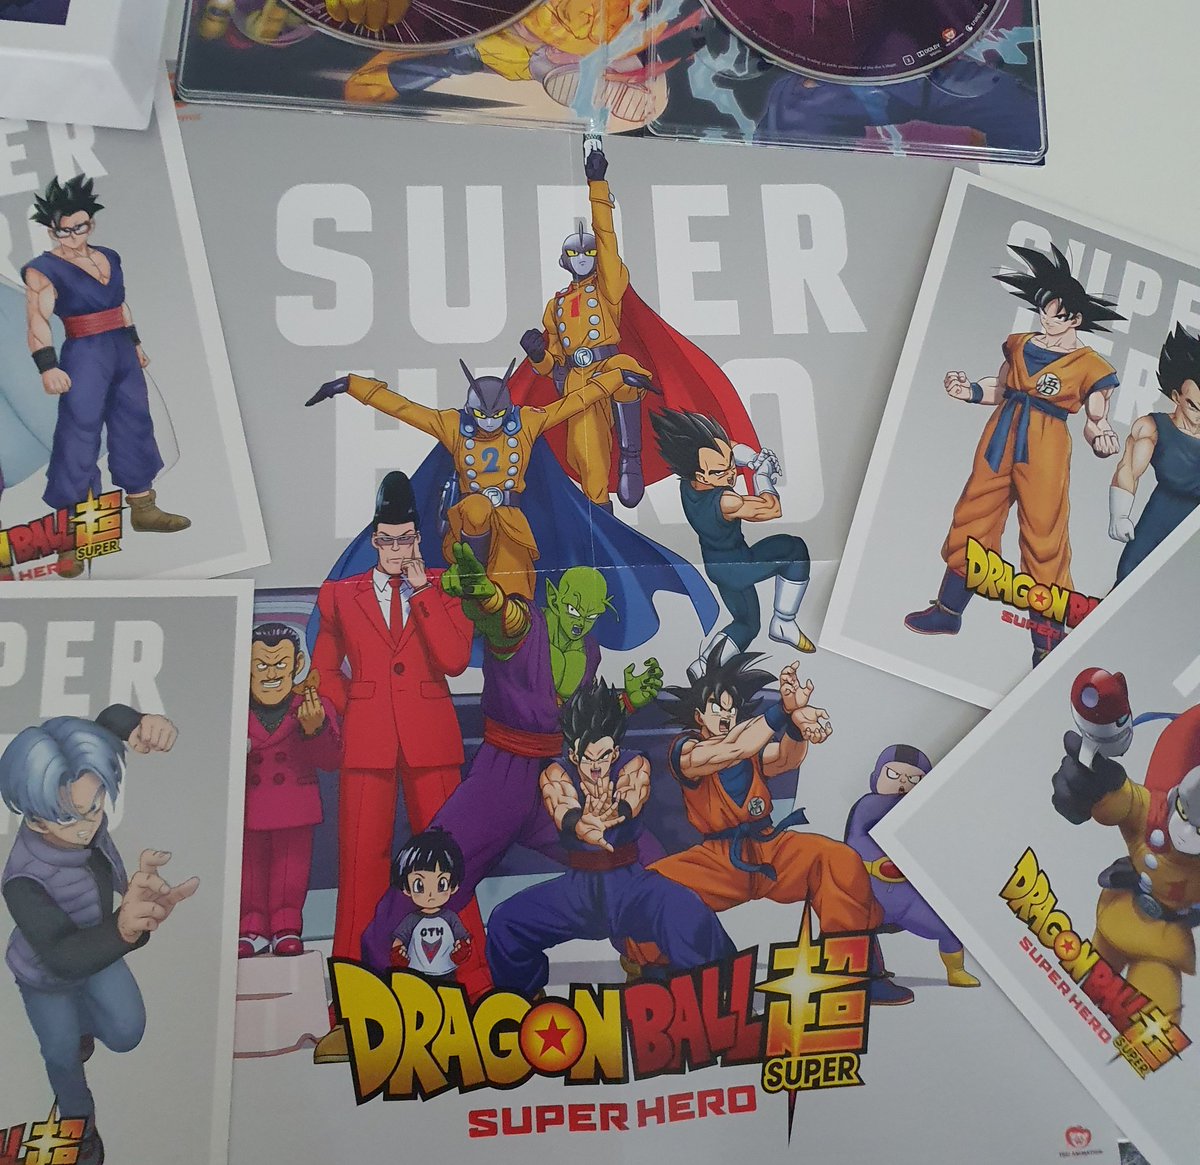 Acaba de llegarme esta joyita 💙
Dragon Ball Super SuperHero LIMITED COLLECTOR'S EDITION de Reino Unido
🔸️Blu-Ray + DVD
🔸️Poster portada
🔸️Laminas de cartón exclusivas

#DragonBallSuperHero